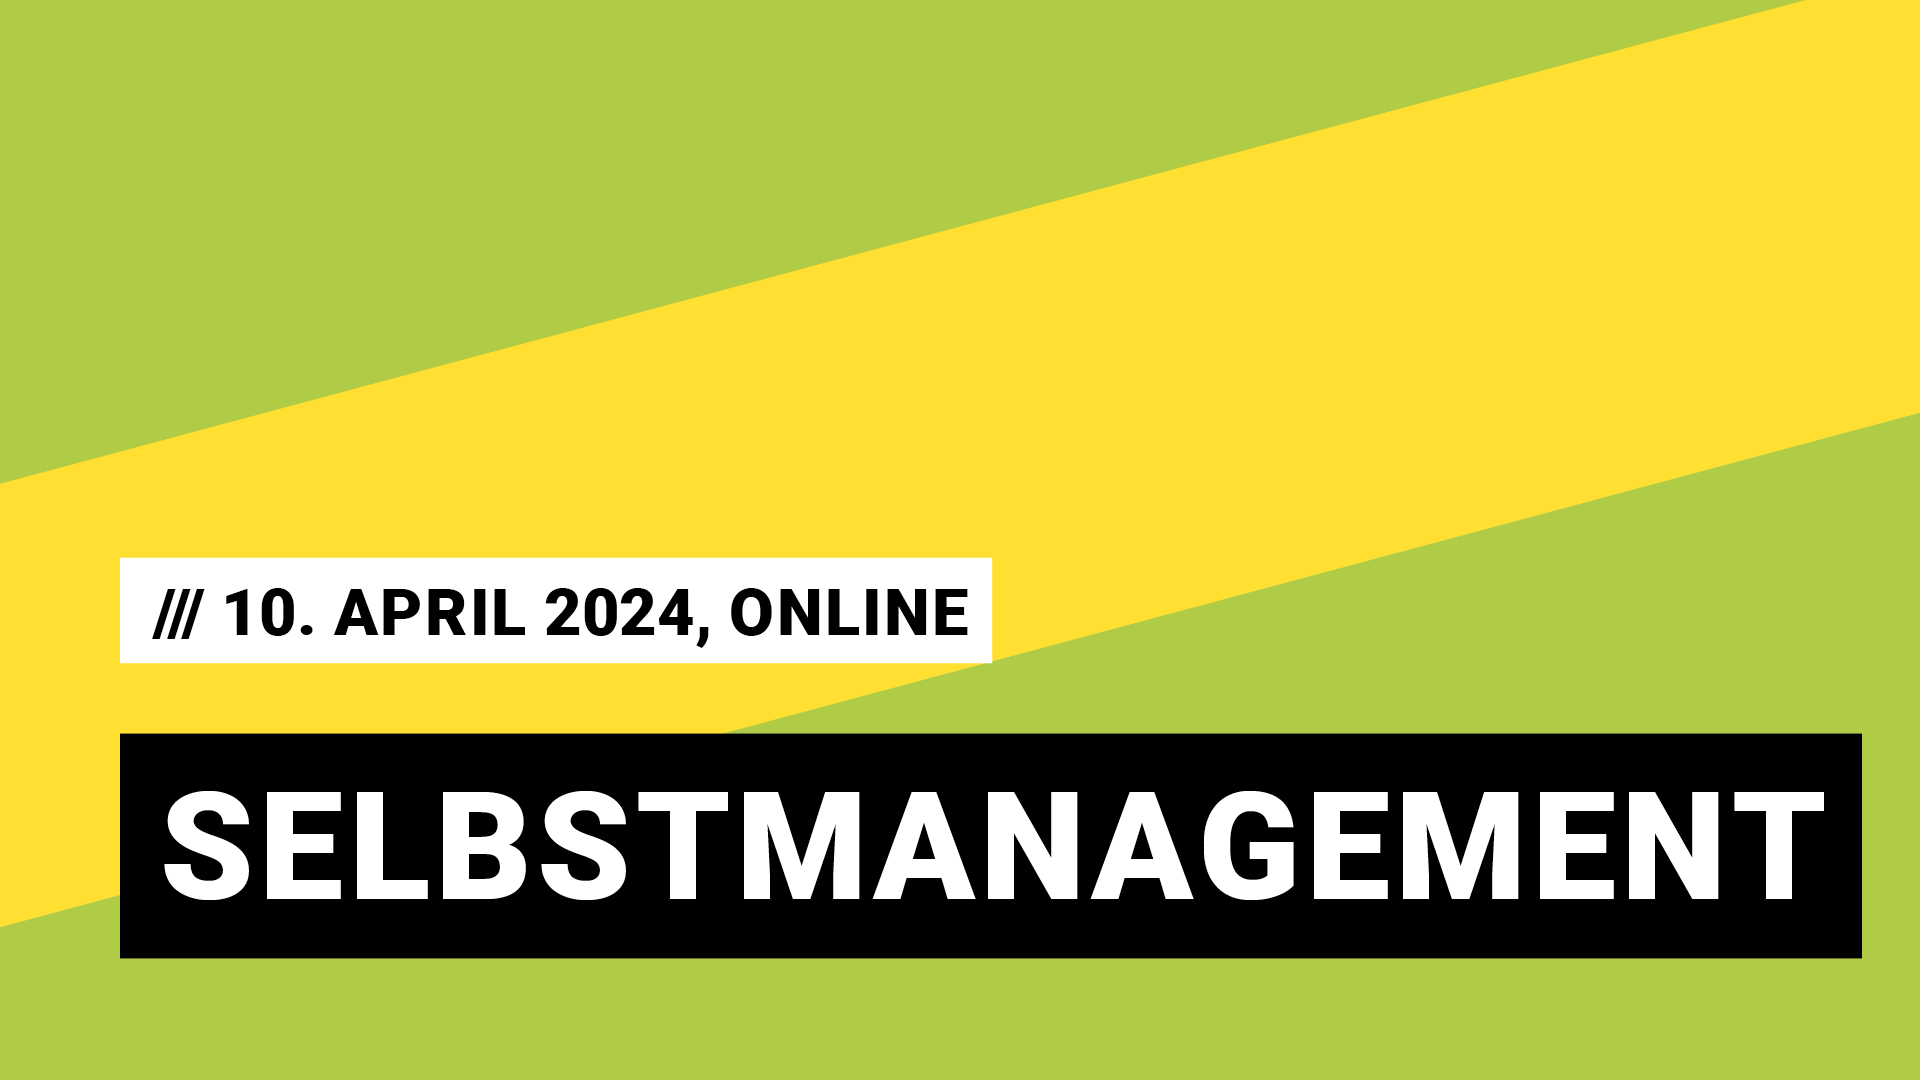 Titelbild Veranstaltung Selbstmanagement mit Datum 10. April 2024, online